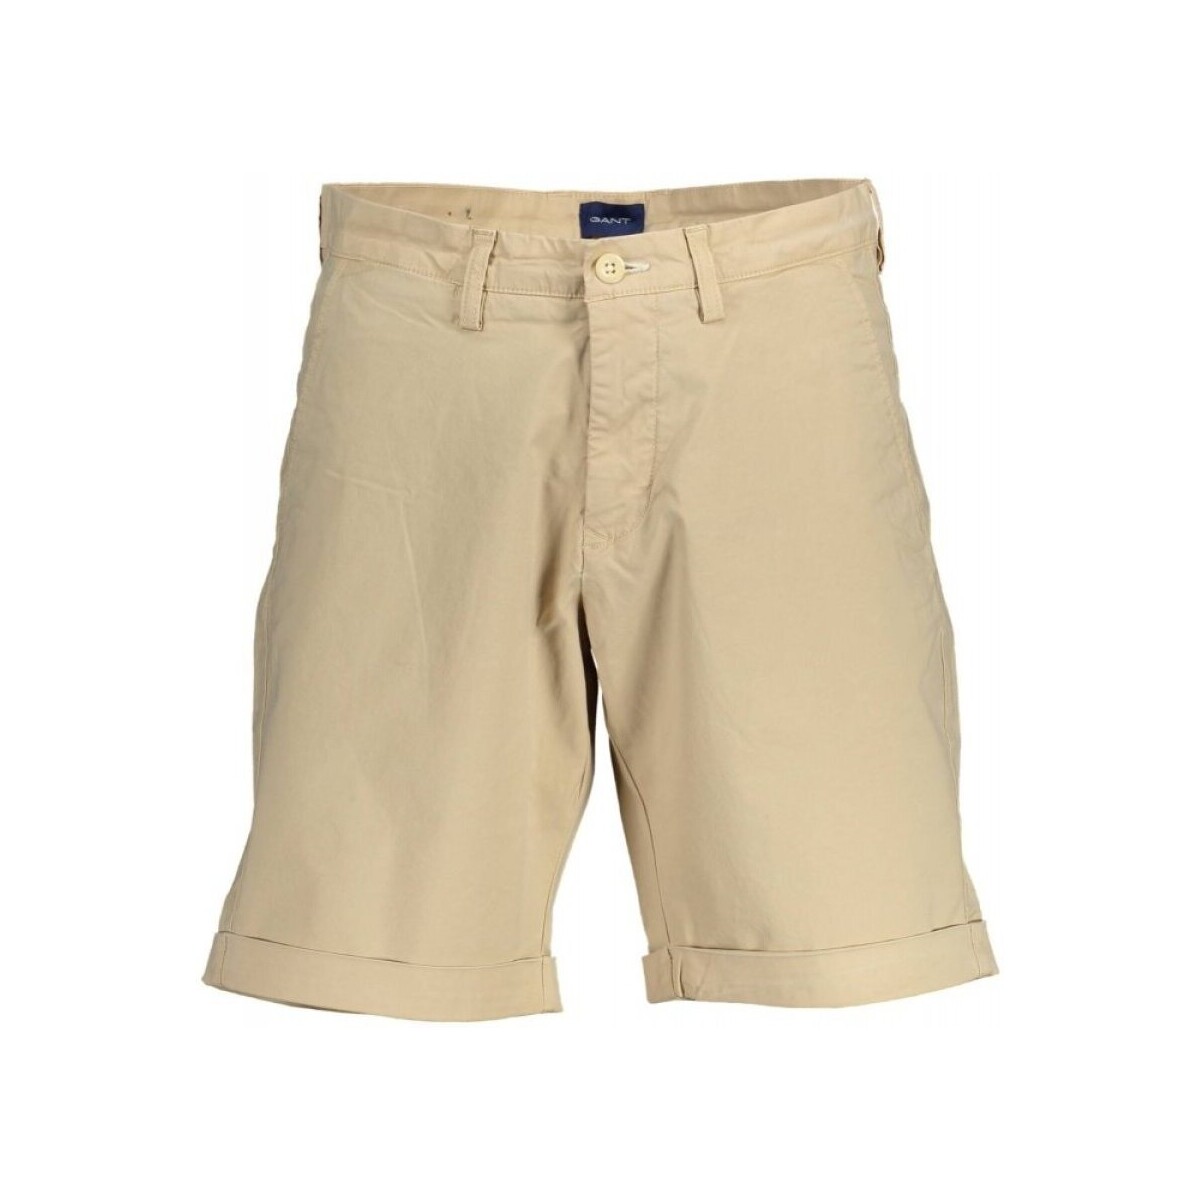 Kleidung Herren Shorts / Bermudas Gant 200039 Beige